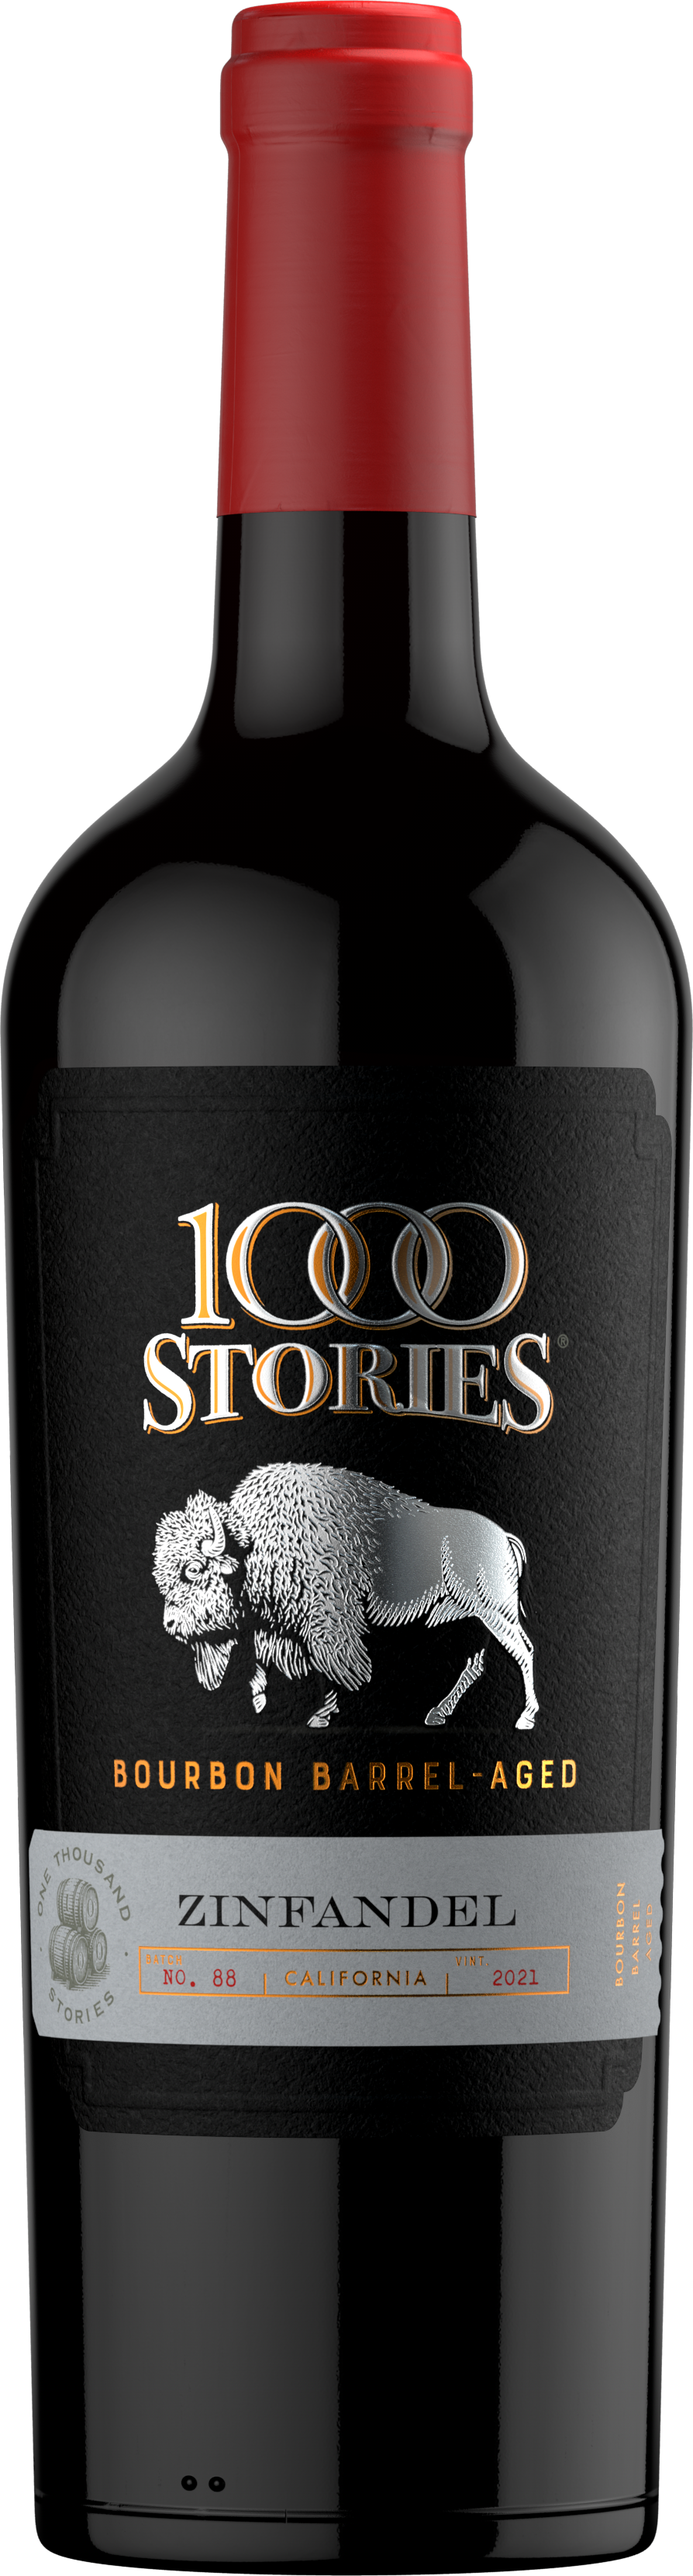 1000 Stories Zinfandel 2021 - Batch 88